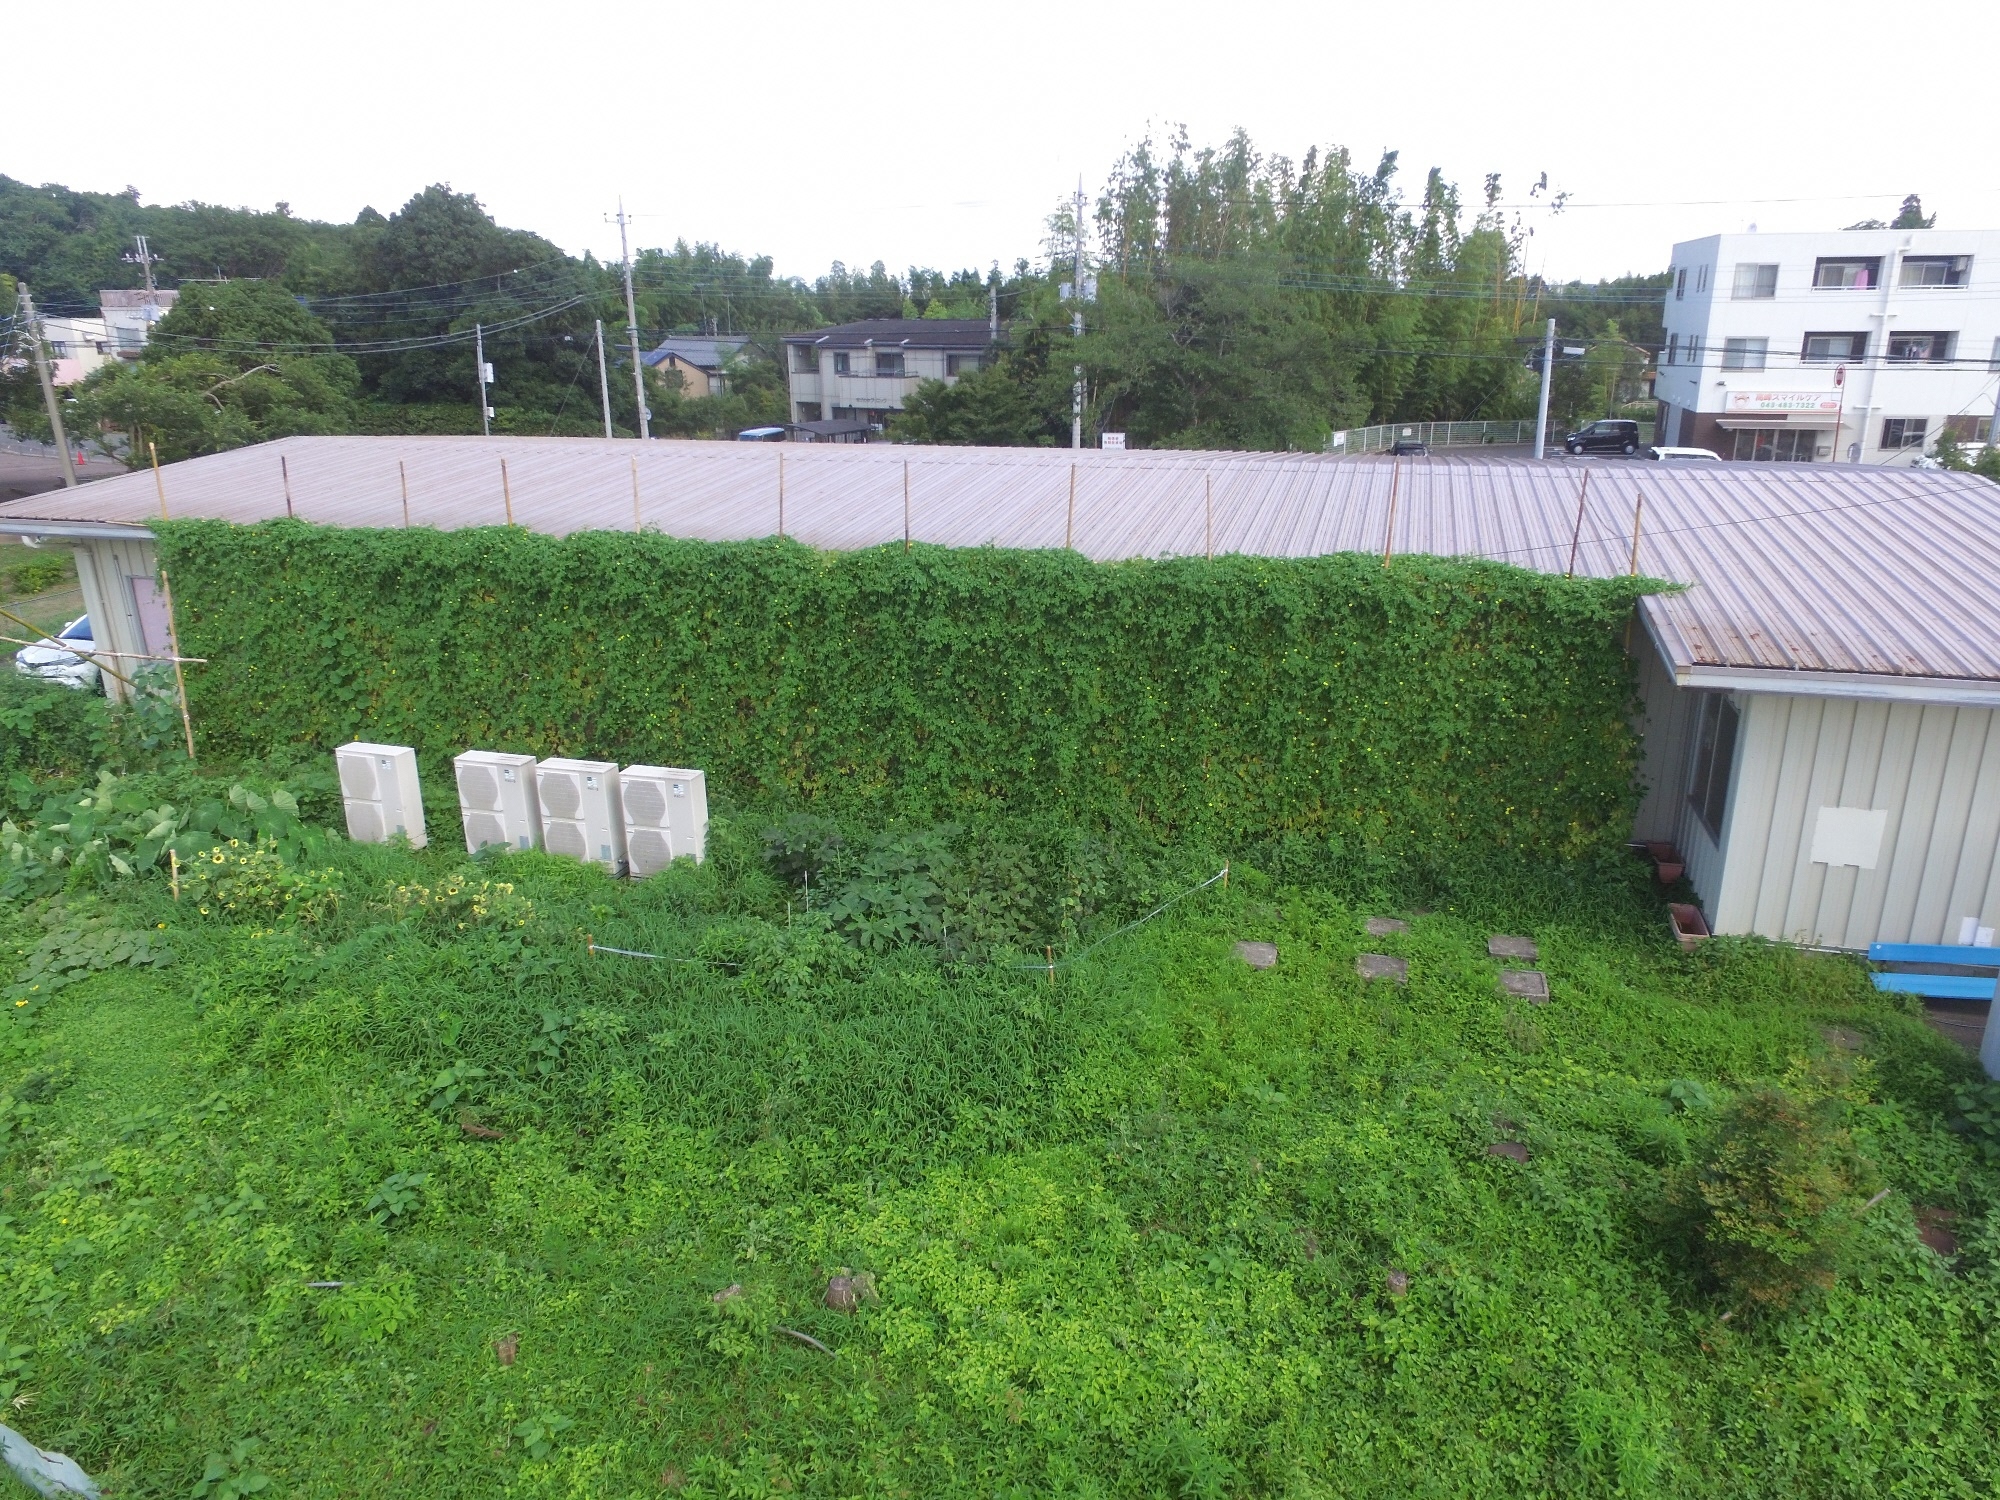 建物の側面が屋根まで伸びた緑のカーテンで覆われている写真